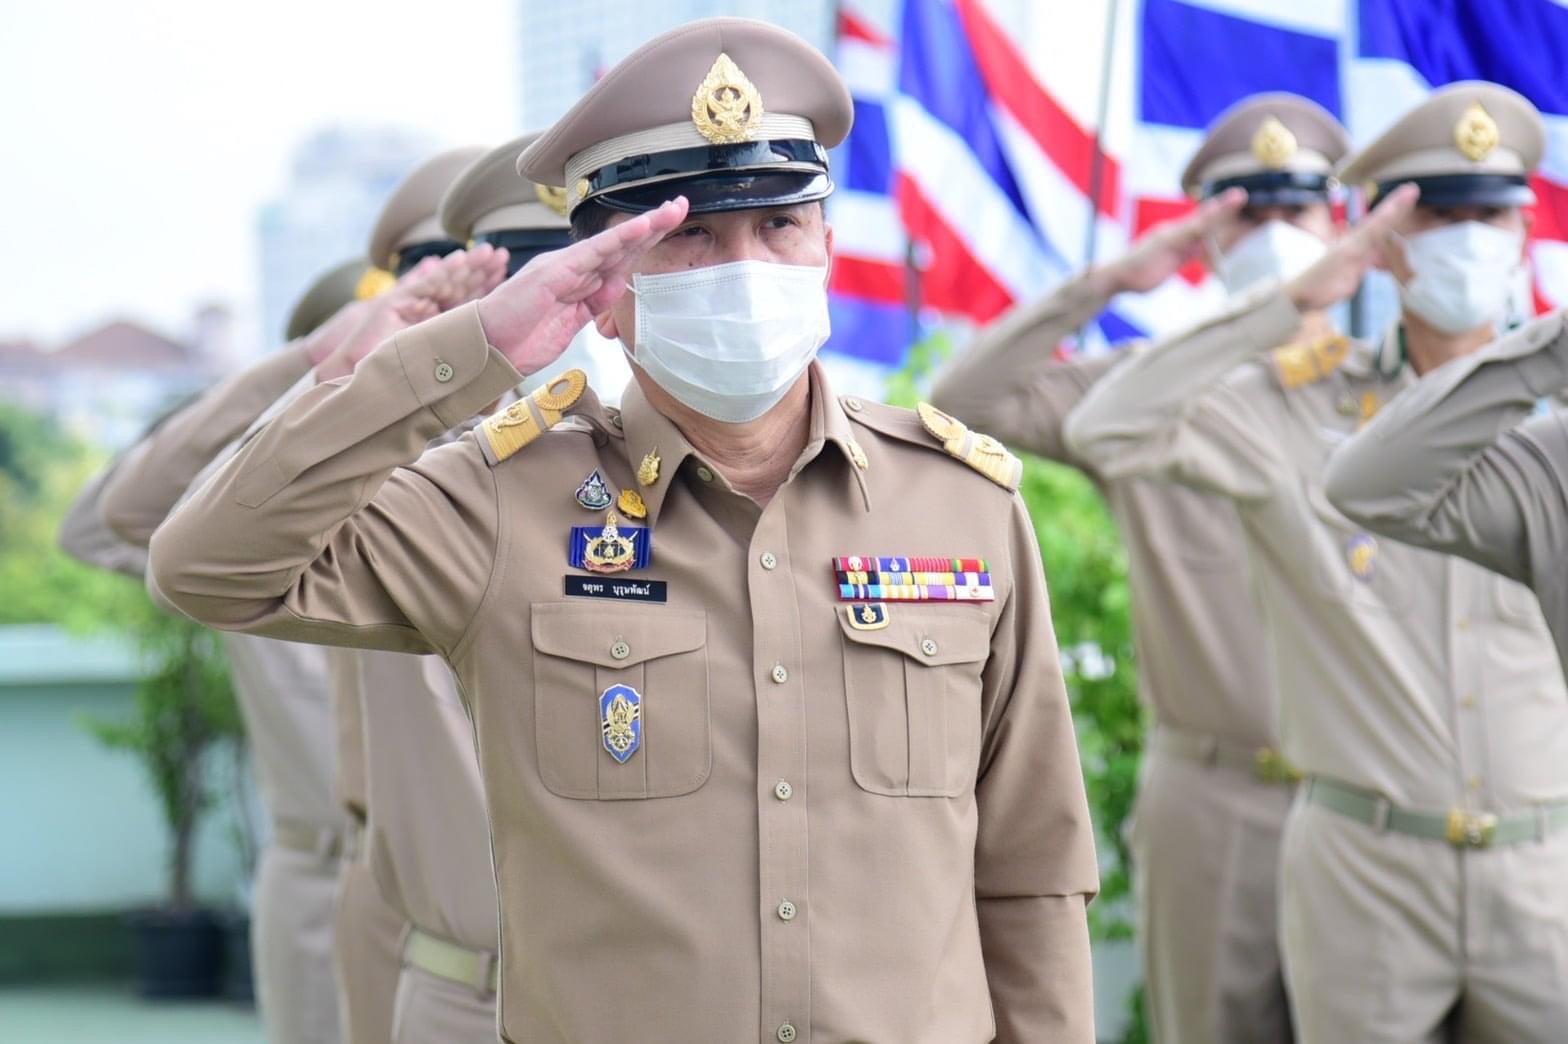 “ปลัดฯ จตุพร นำคณะผู้บริหารกระทรวงทรัพยากรฯ เข้าแถวเคารพธงชาติ เนื่องในวันพระราชทานธงชาติไทย 28 กันยายน ด้วยความภาคภูมิใจในความเป็นชาติ”